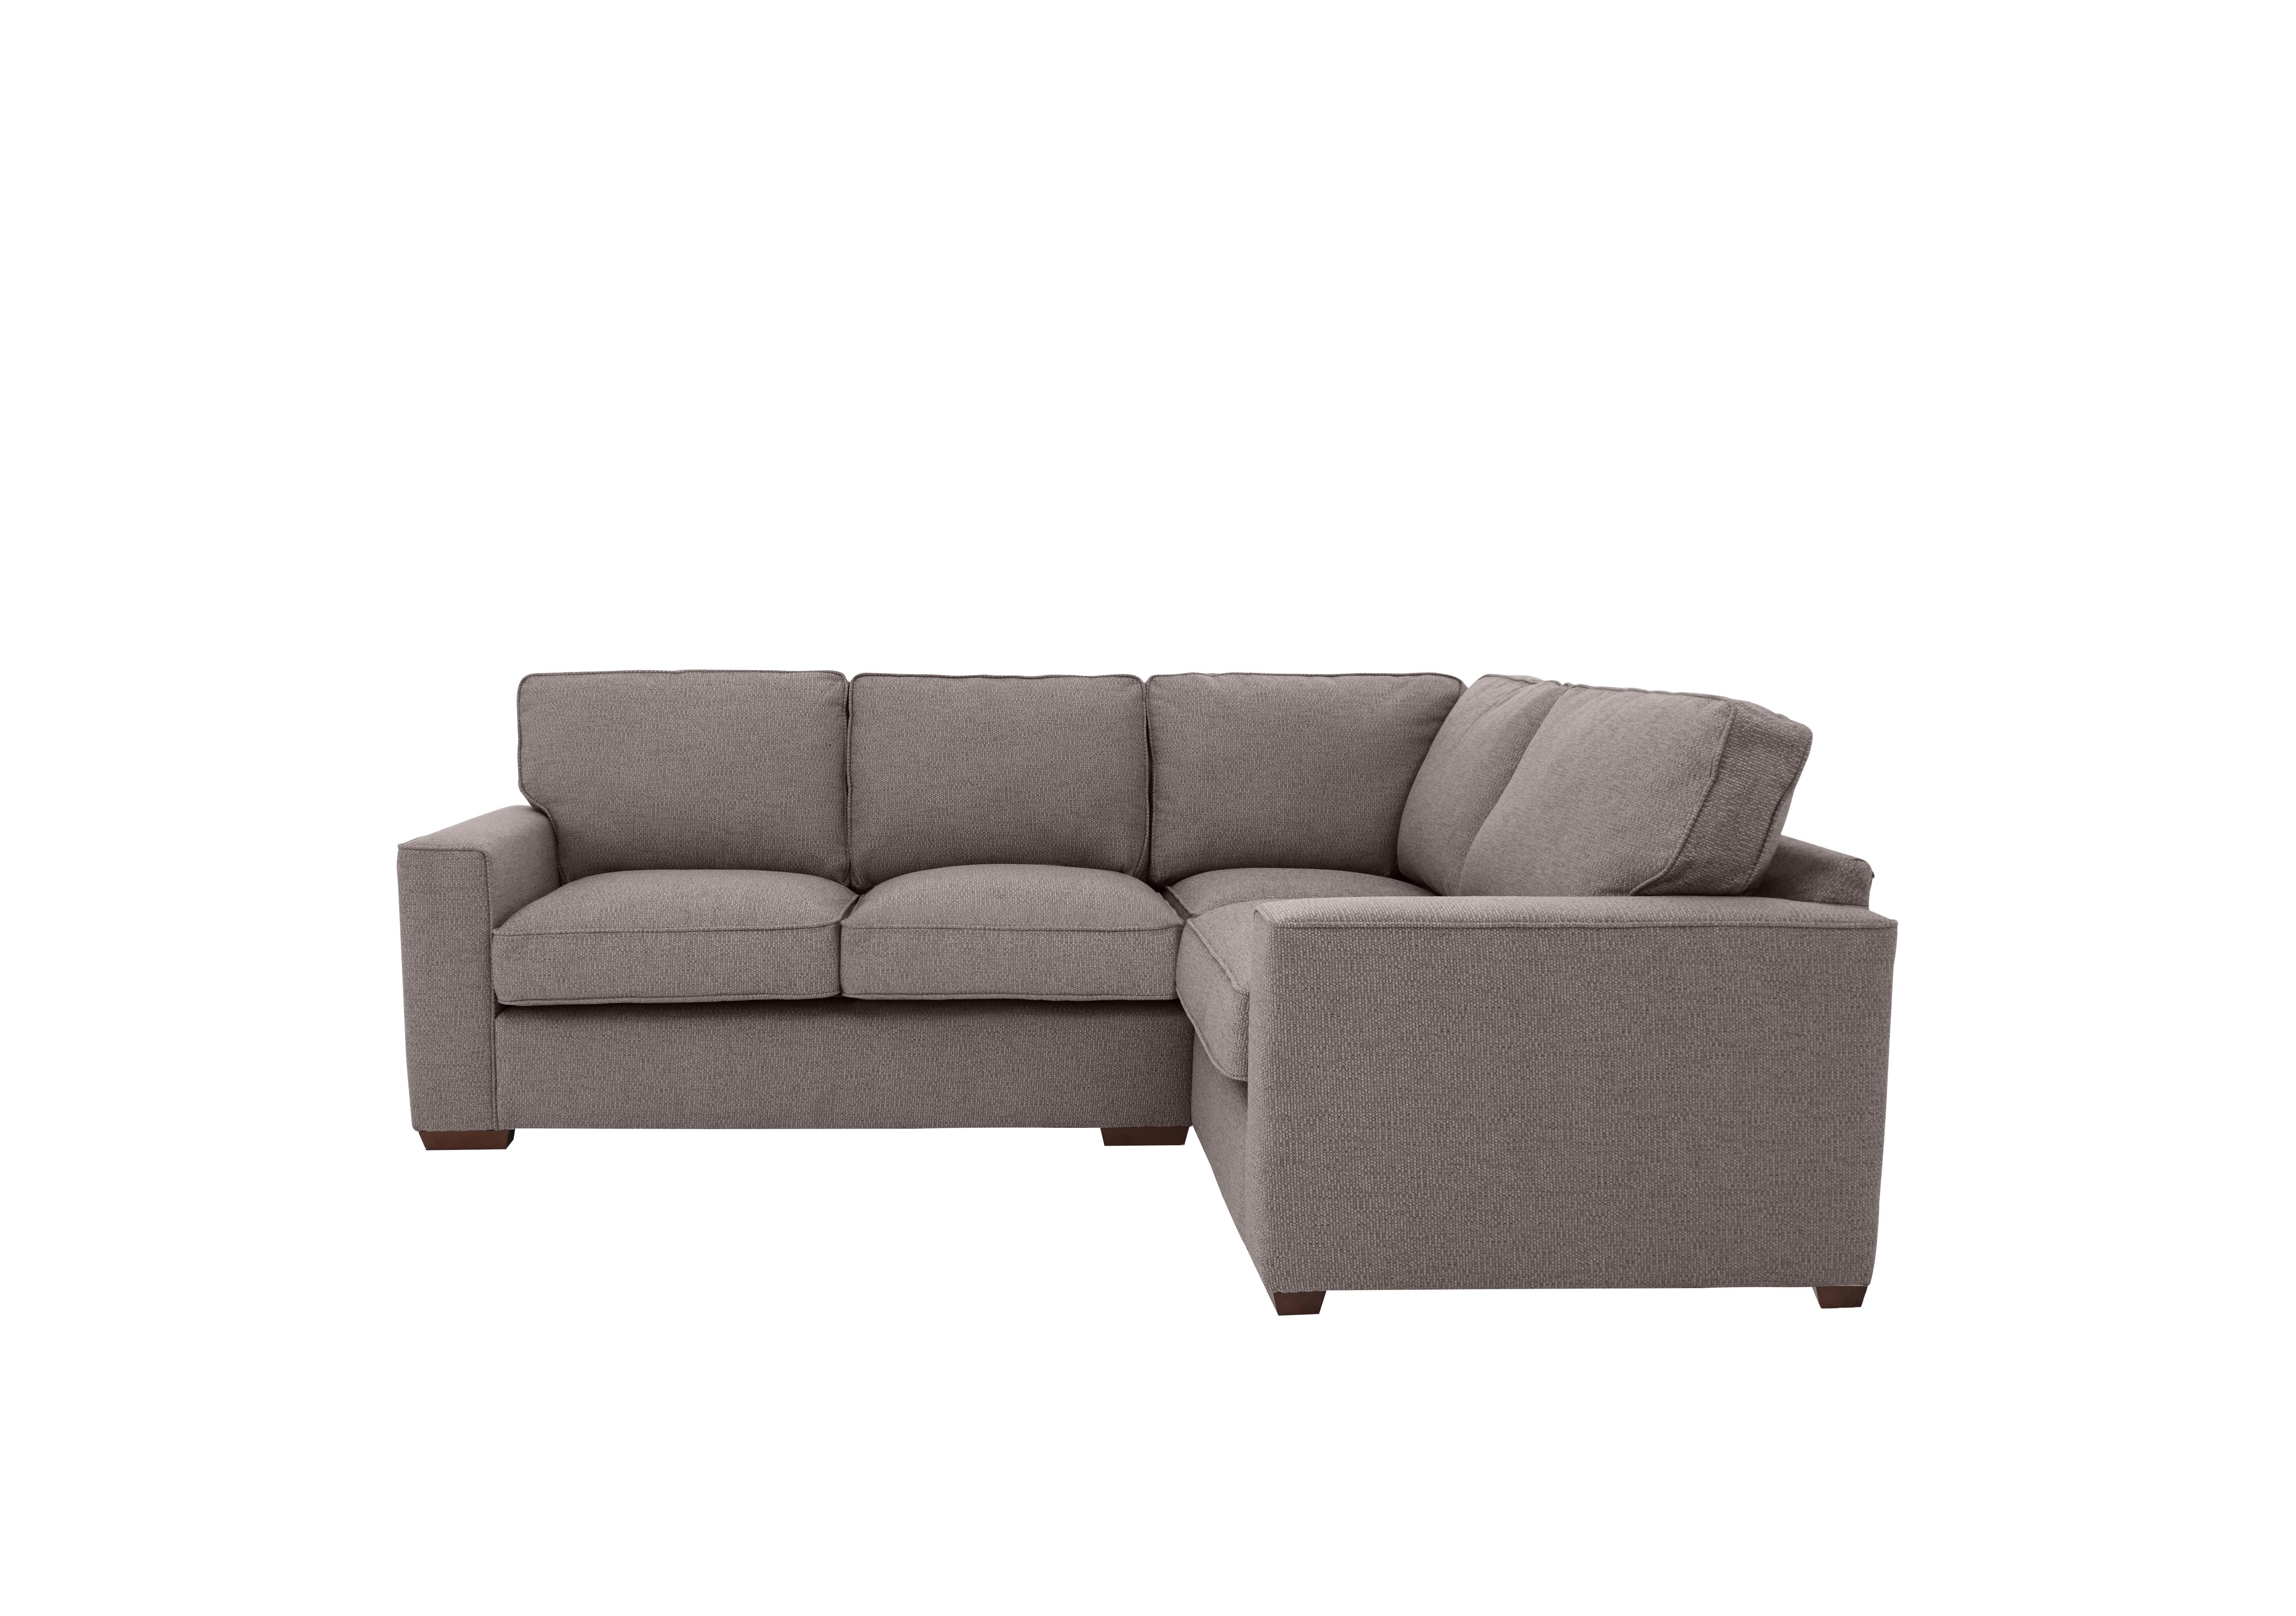 Cory Small Fabric Corner Classic Back Sofa in Dallas Taupe on Furniture Village